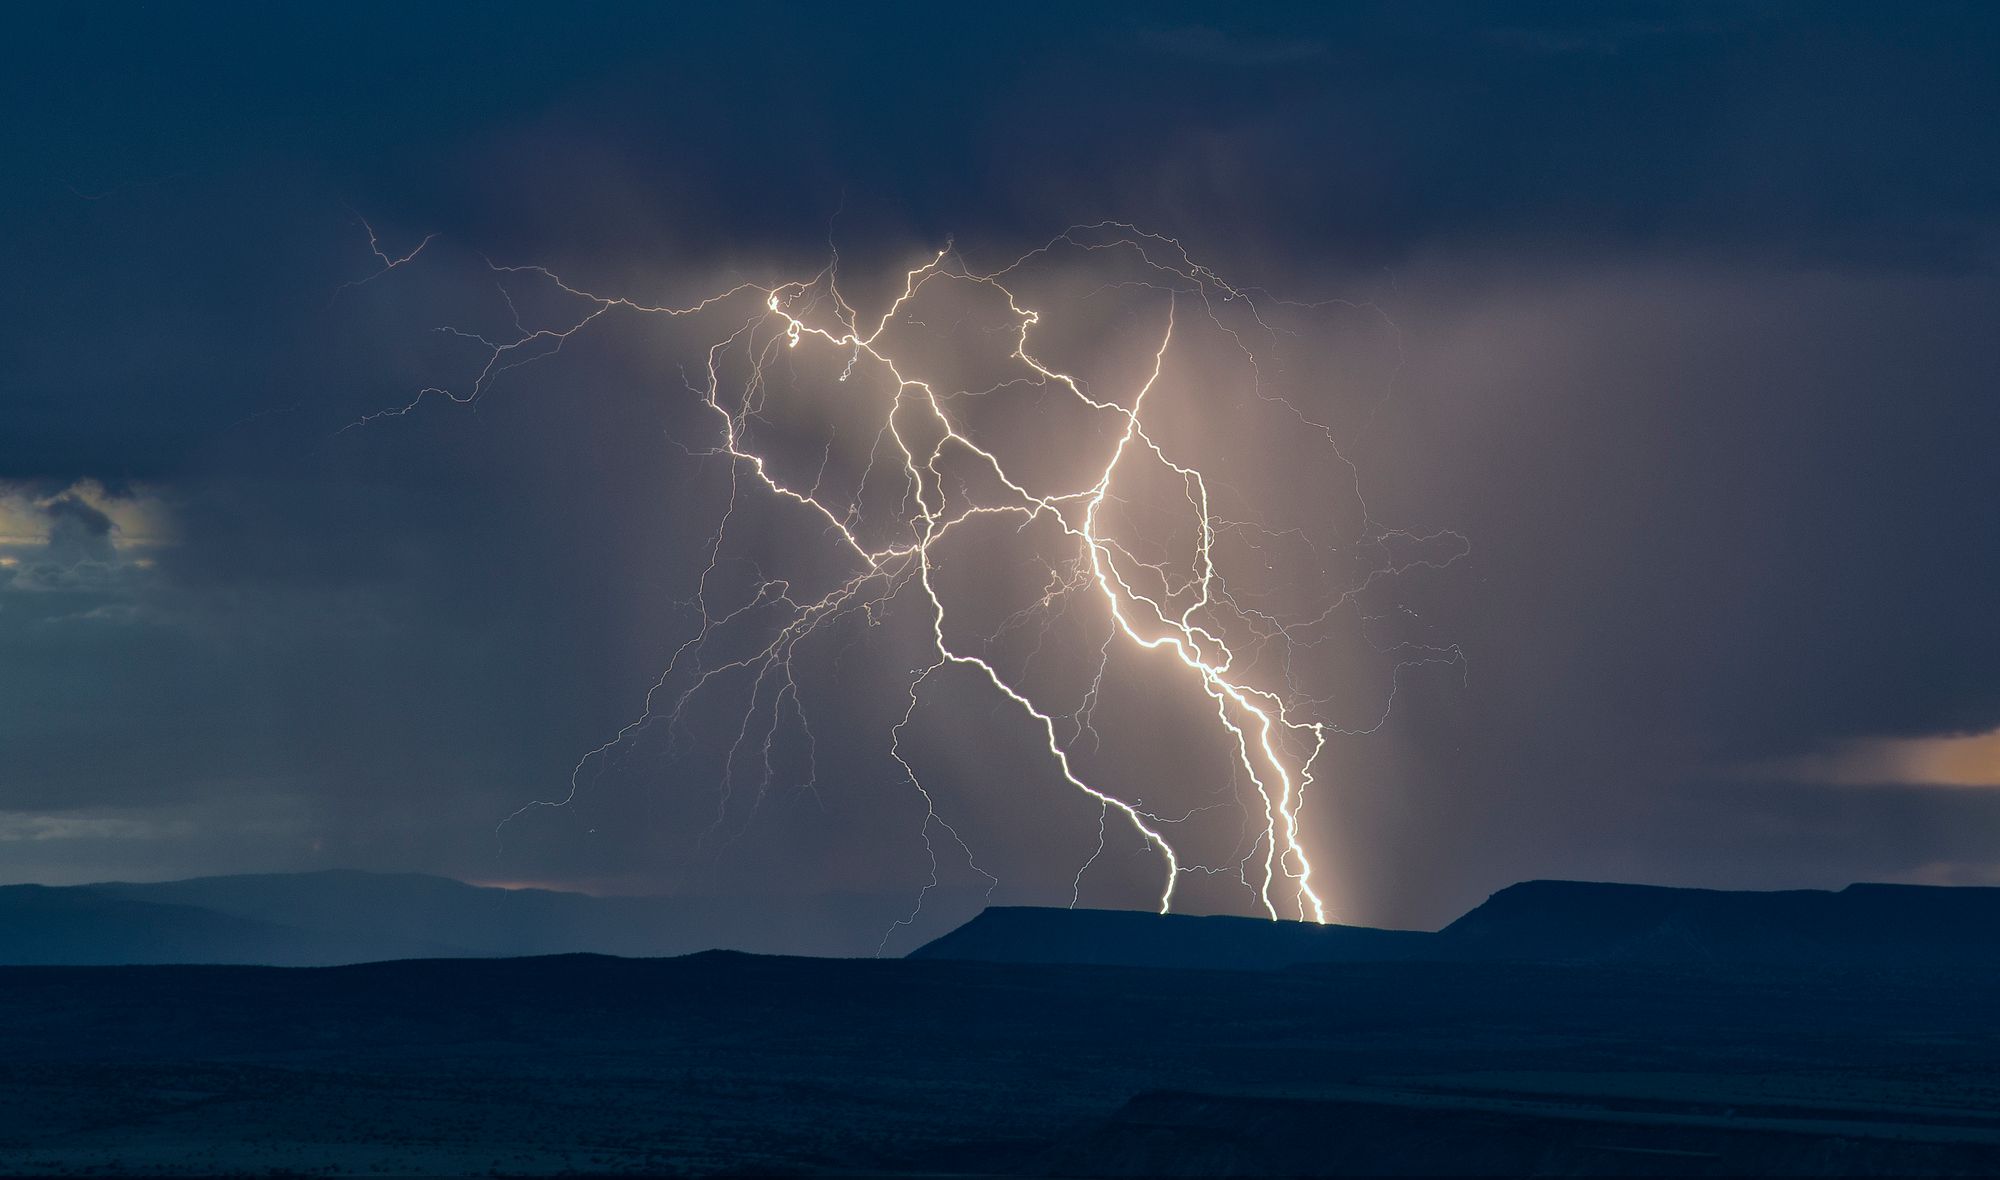 Lightning Strikes by John Fowler, Flickr